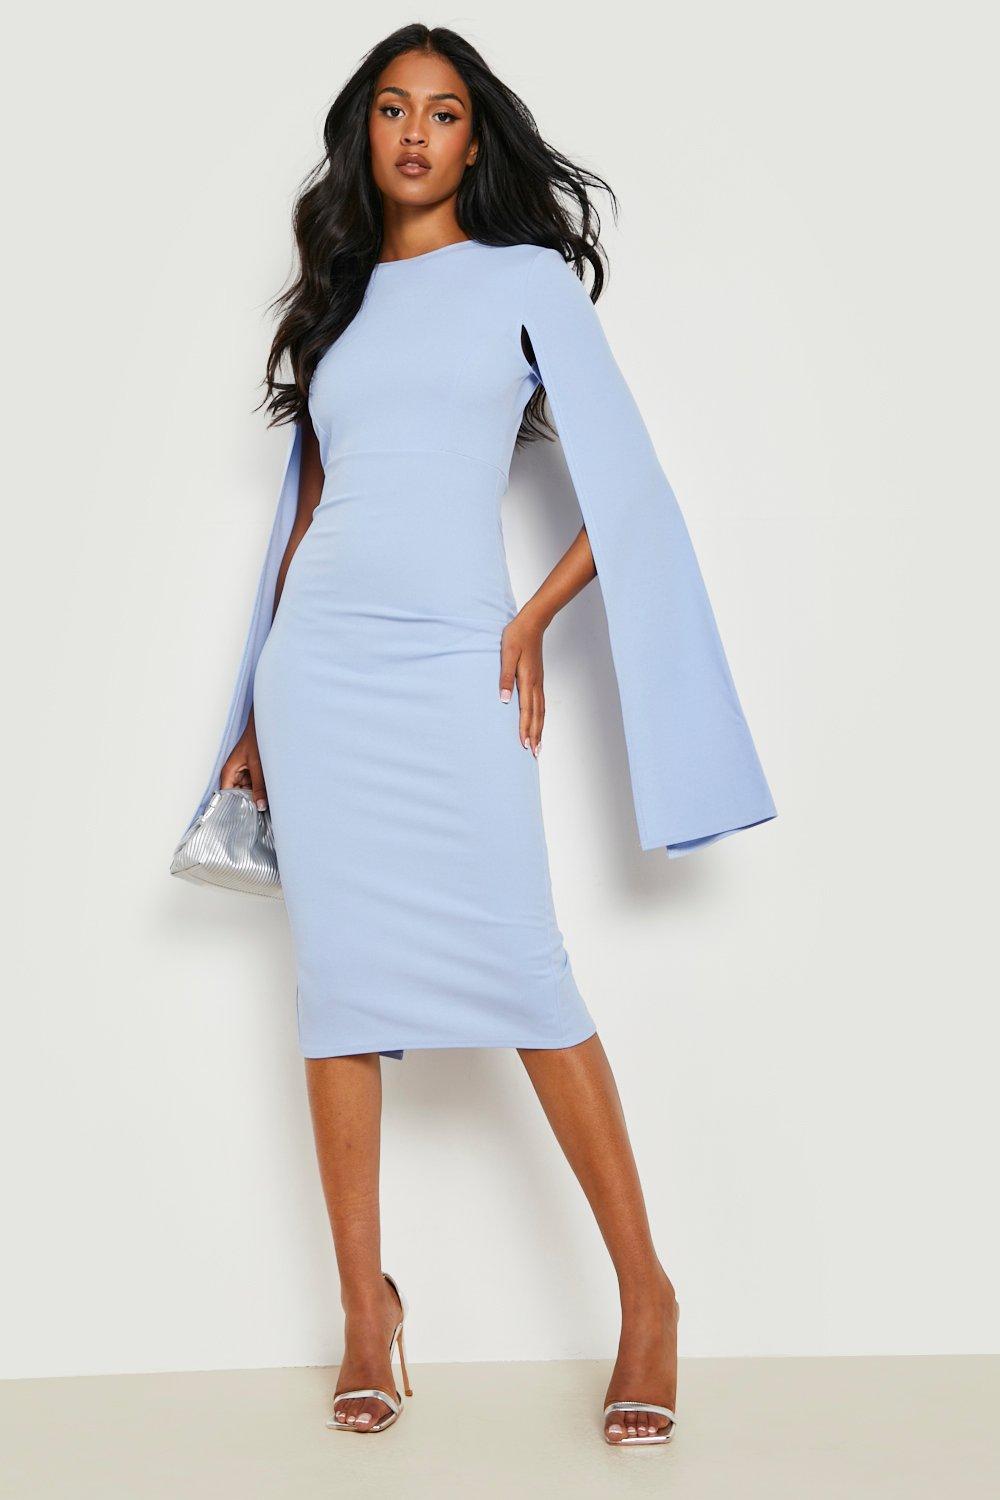 Open-back Dress - White/blue floral - Ladies | H&M US